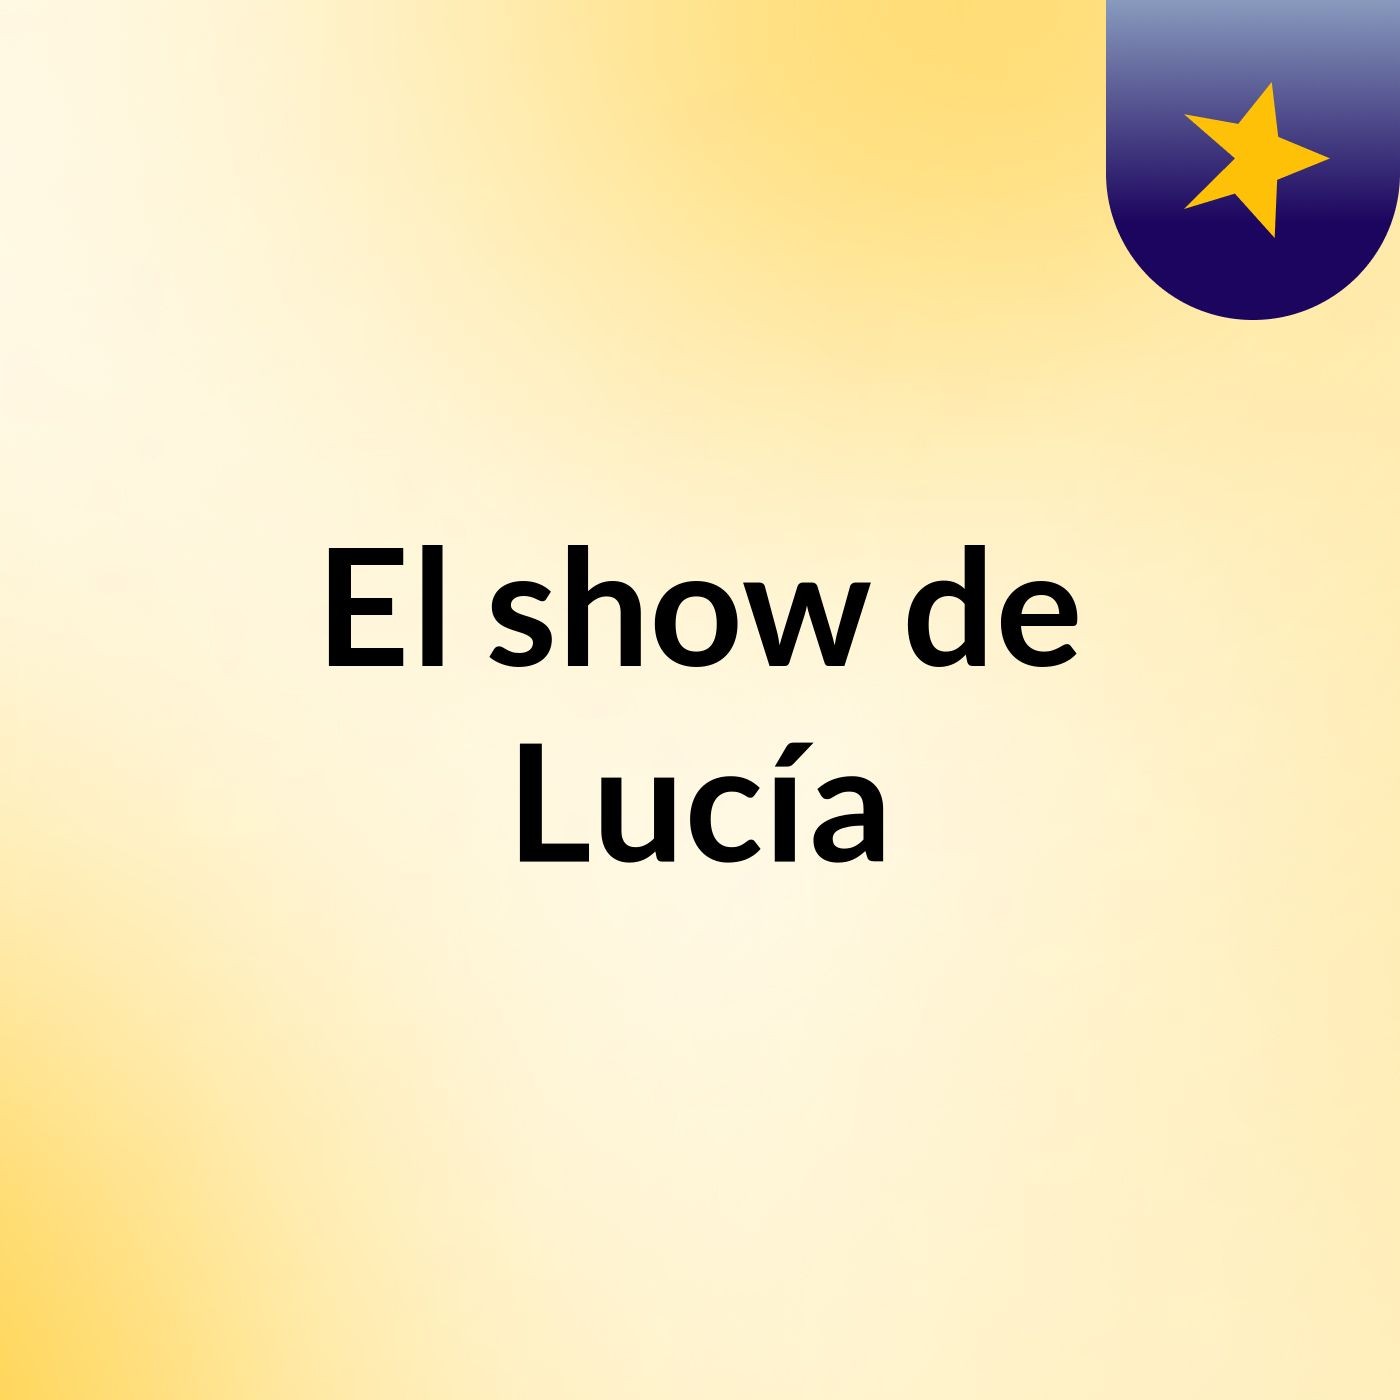 El show de Lucía